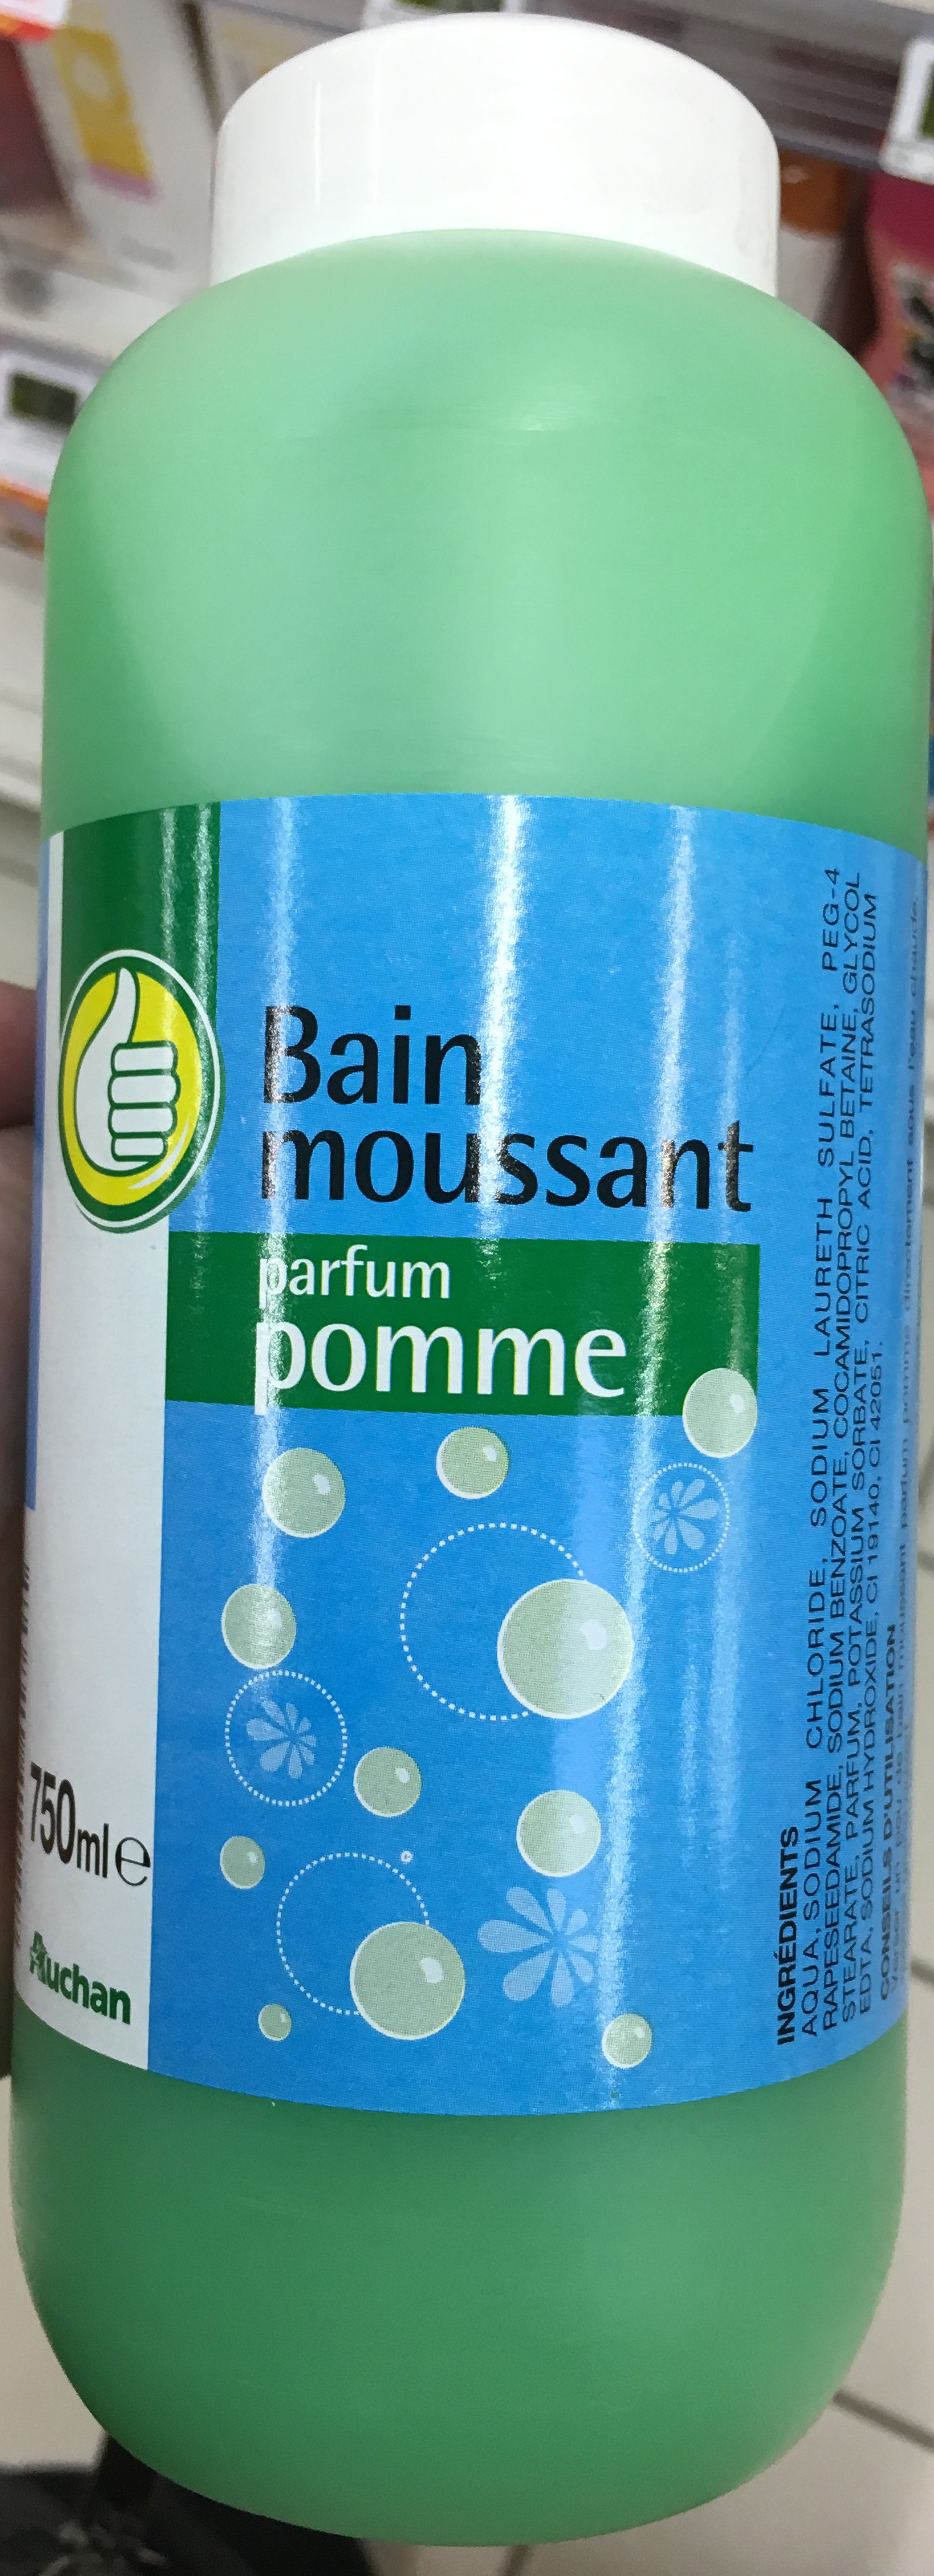 Bain moussant parfum pomme - Produit - fr